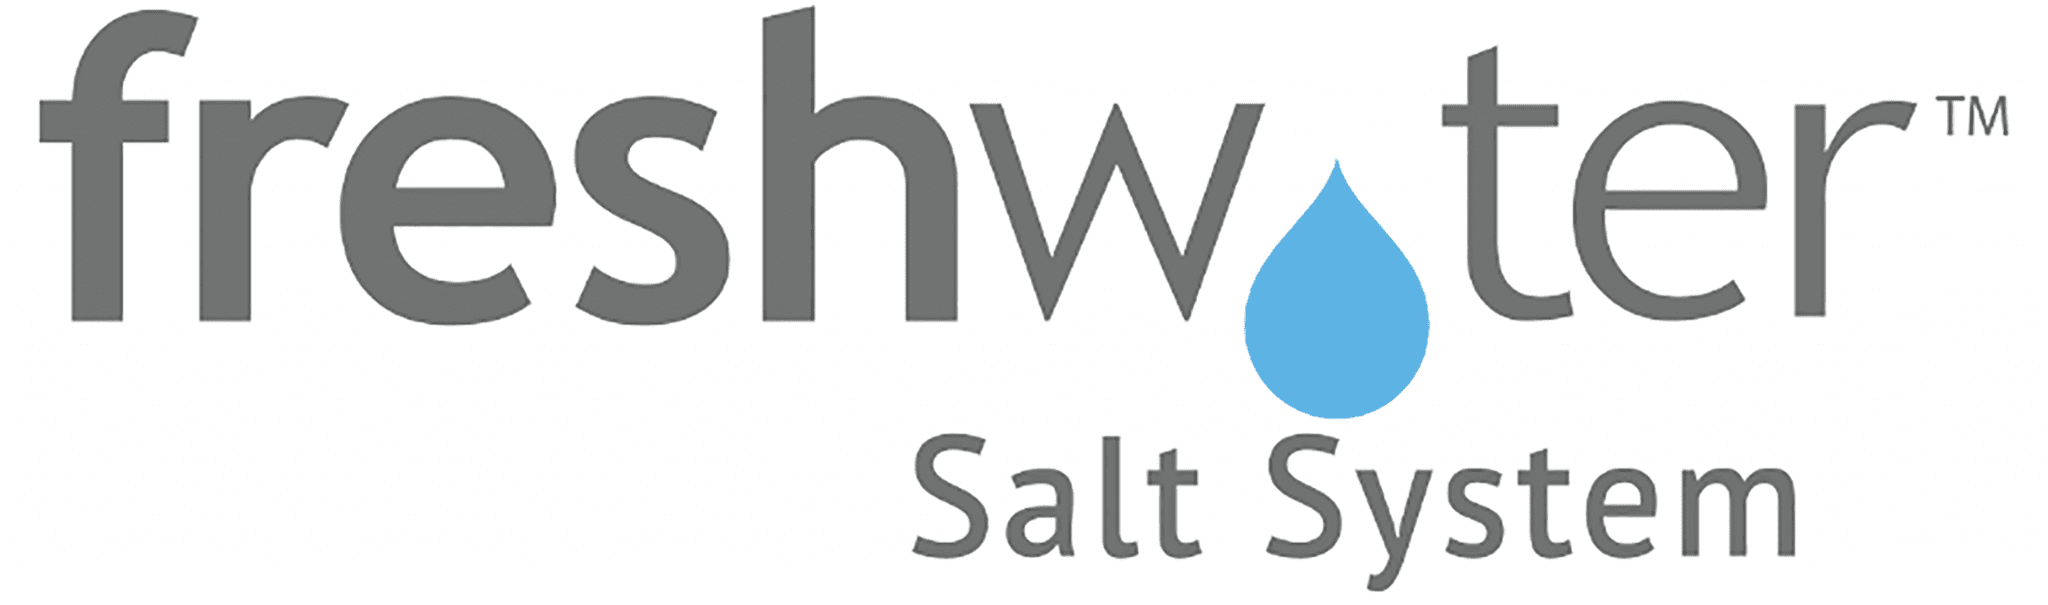 hot-spring-freshwater-salt-system-logo-white